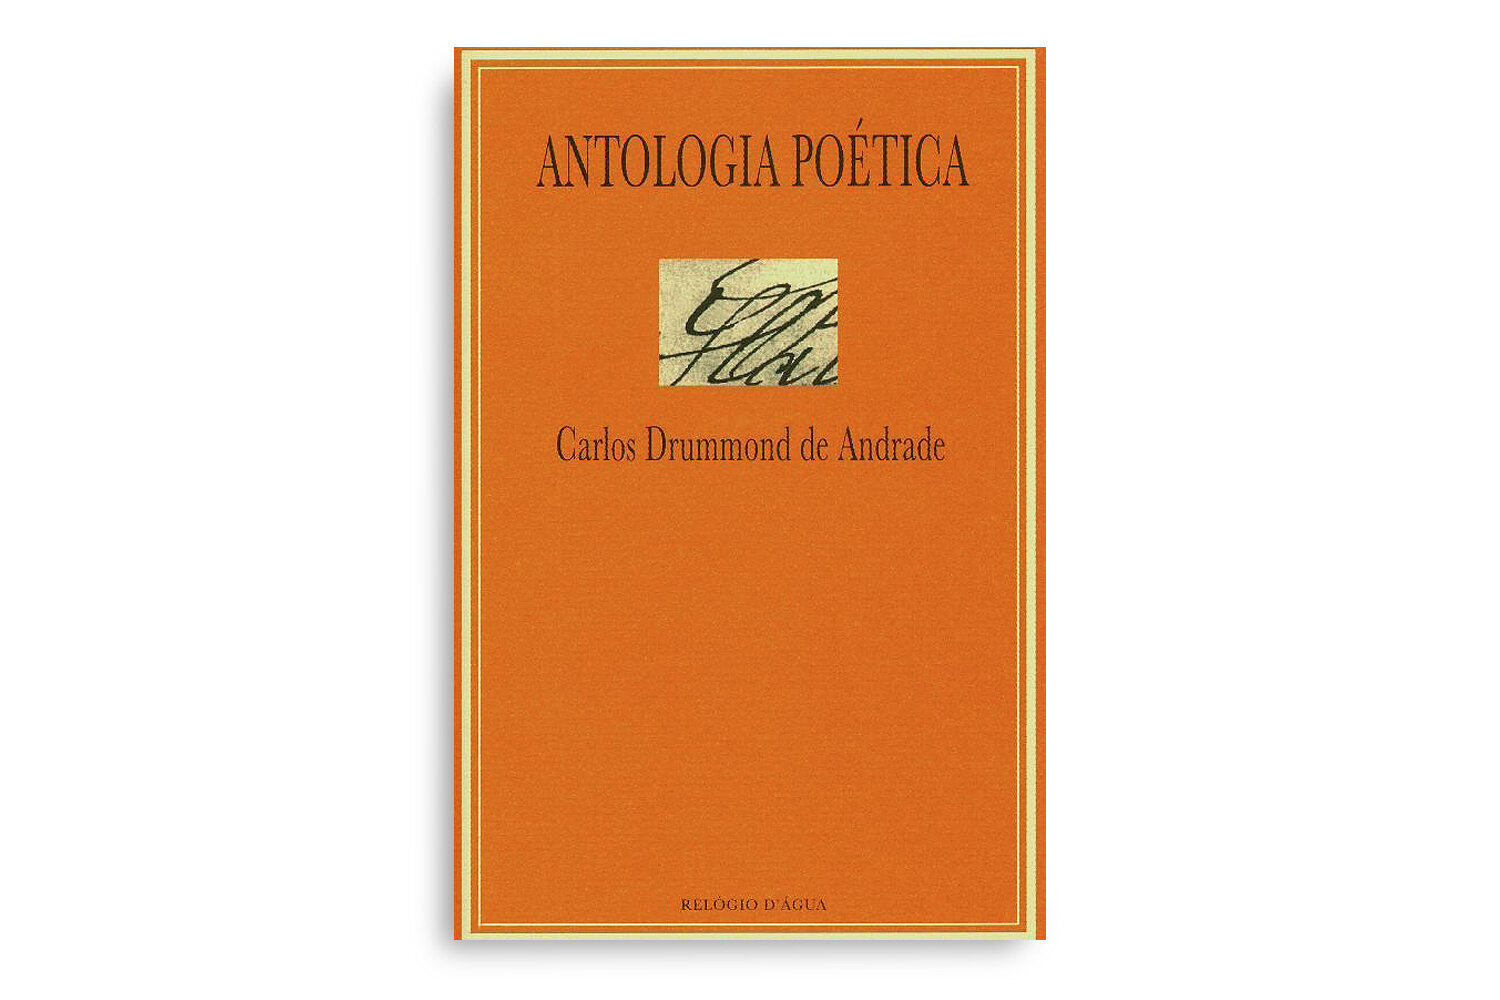 Antologia poética - Análise da obra de Carlos Drummond de Andrade - Guia  do Estudante